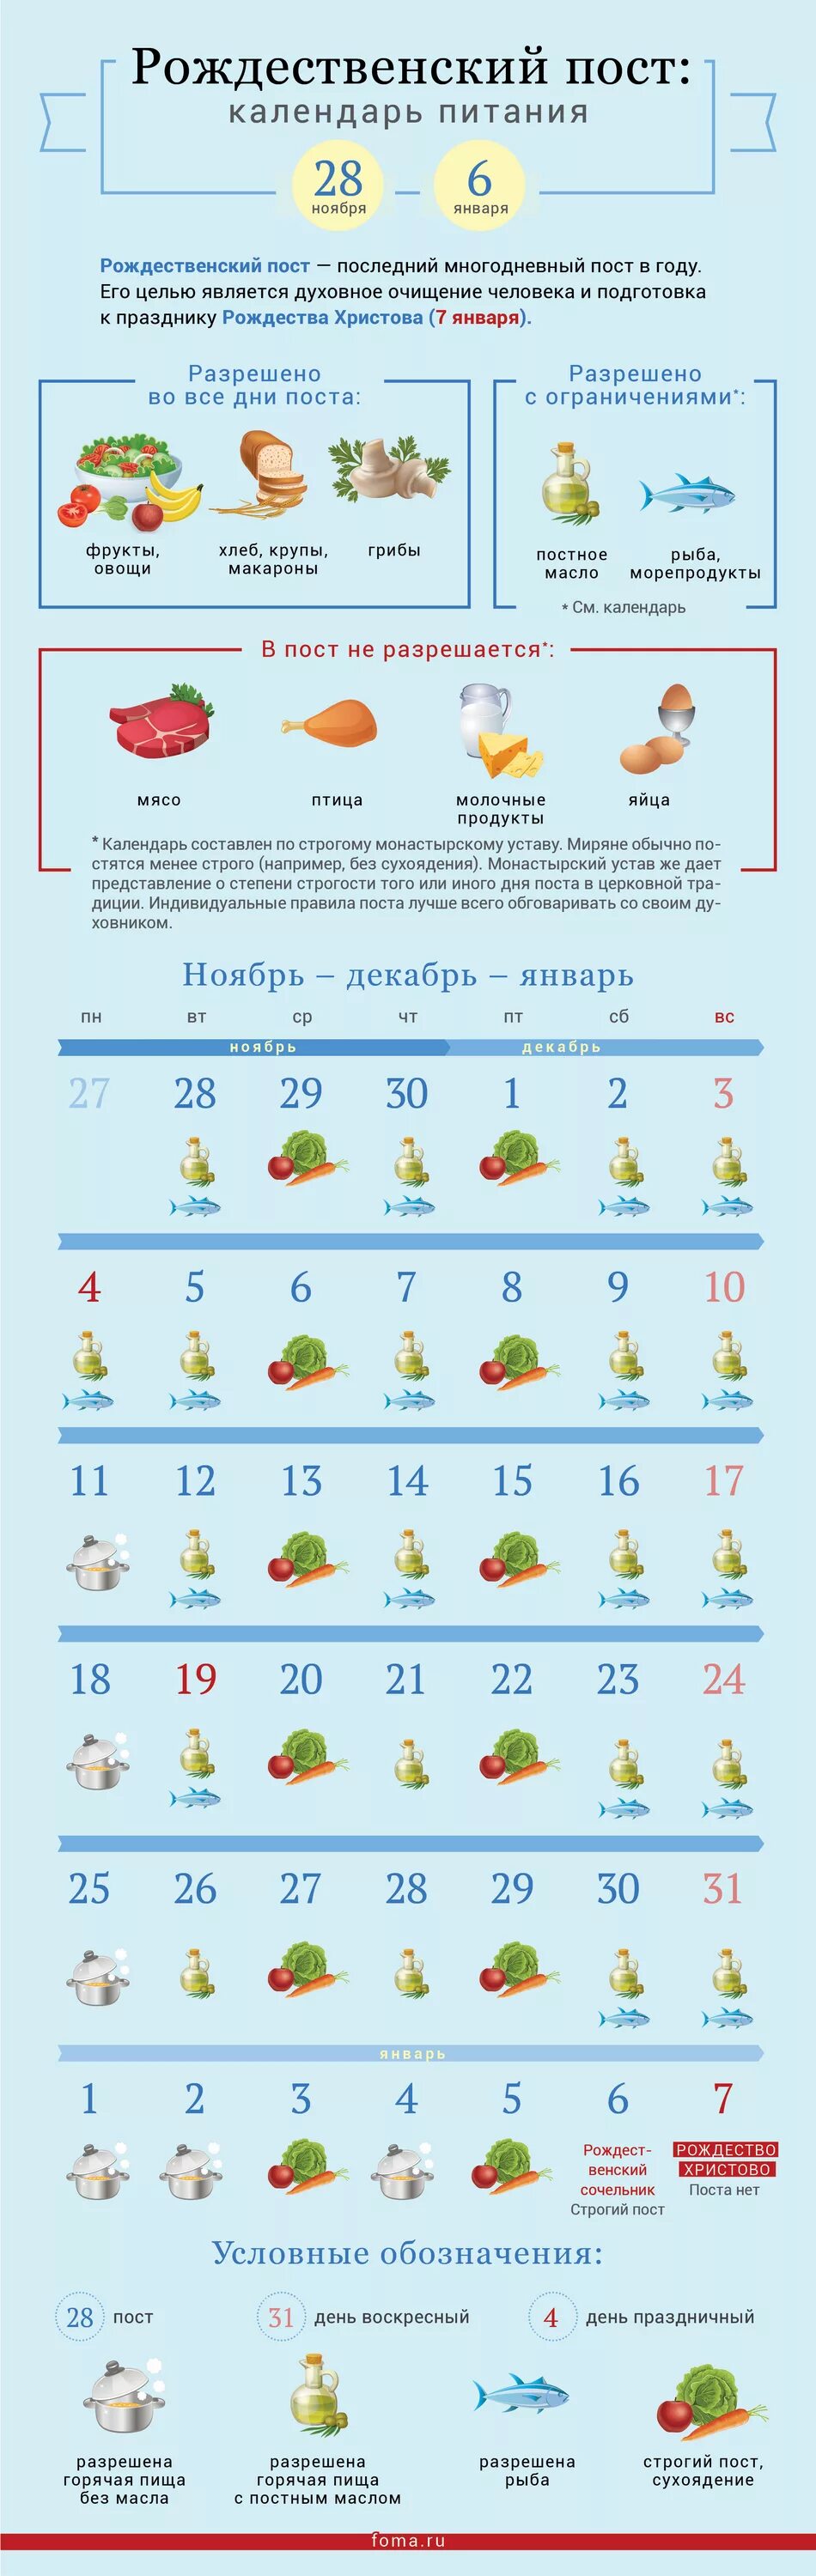 Пост post. Рождественский пост 2022 календарь питания по дням. Календарь питания Рождественского поста на 2022 год. Рождественский пост 2021-2022 календарь питания. Рождественский пост 2022-2023 питание по дням.